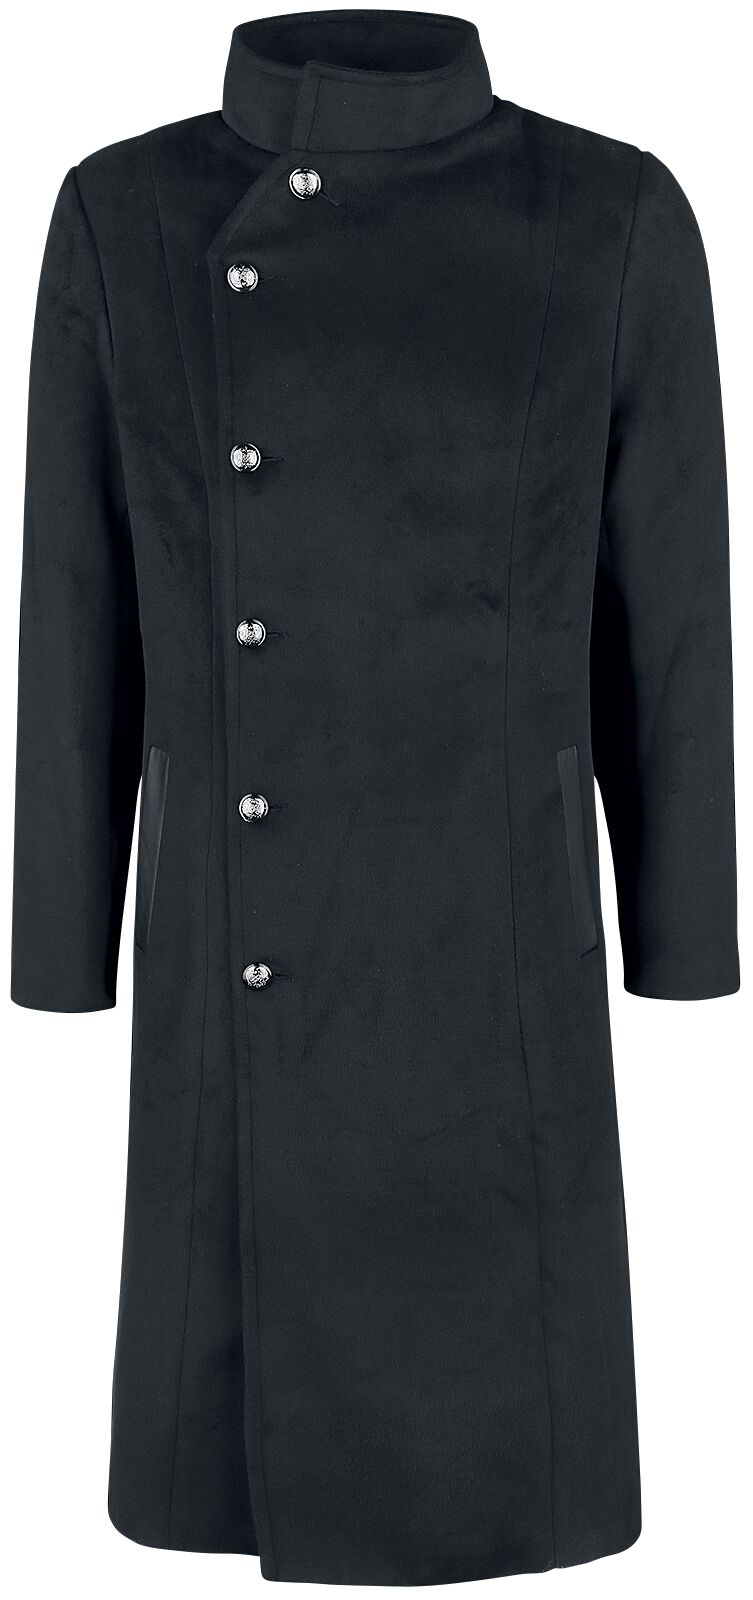 H&R London - Gothic Wintermantel - Winter Coat - S bis 4XL - für Männer - Größe S - schwarz